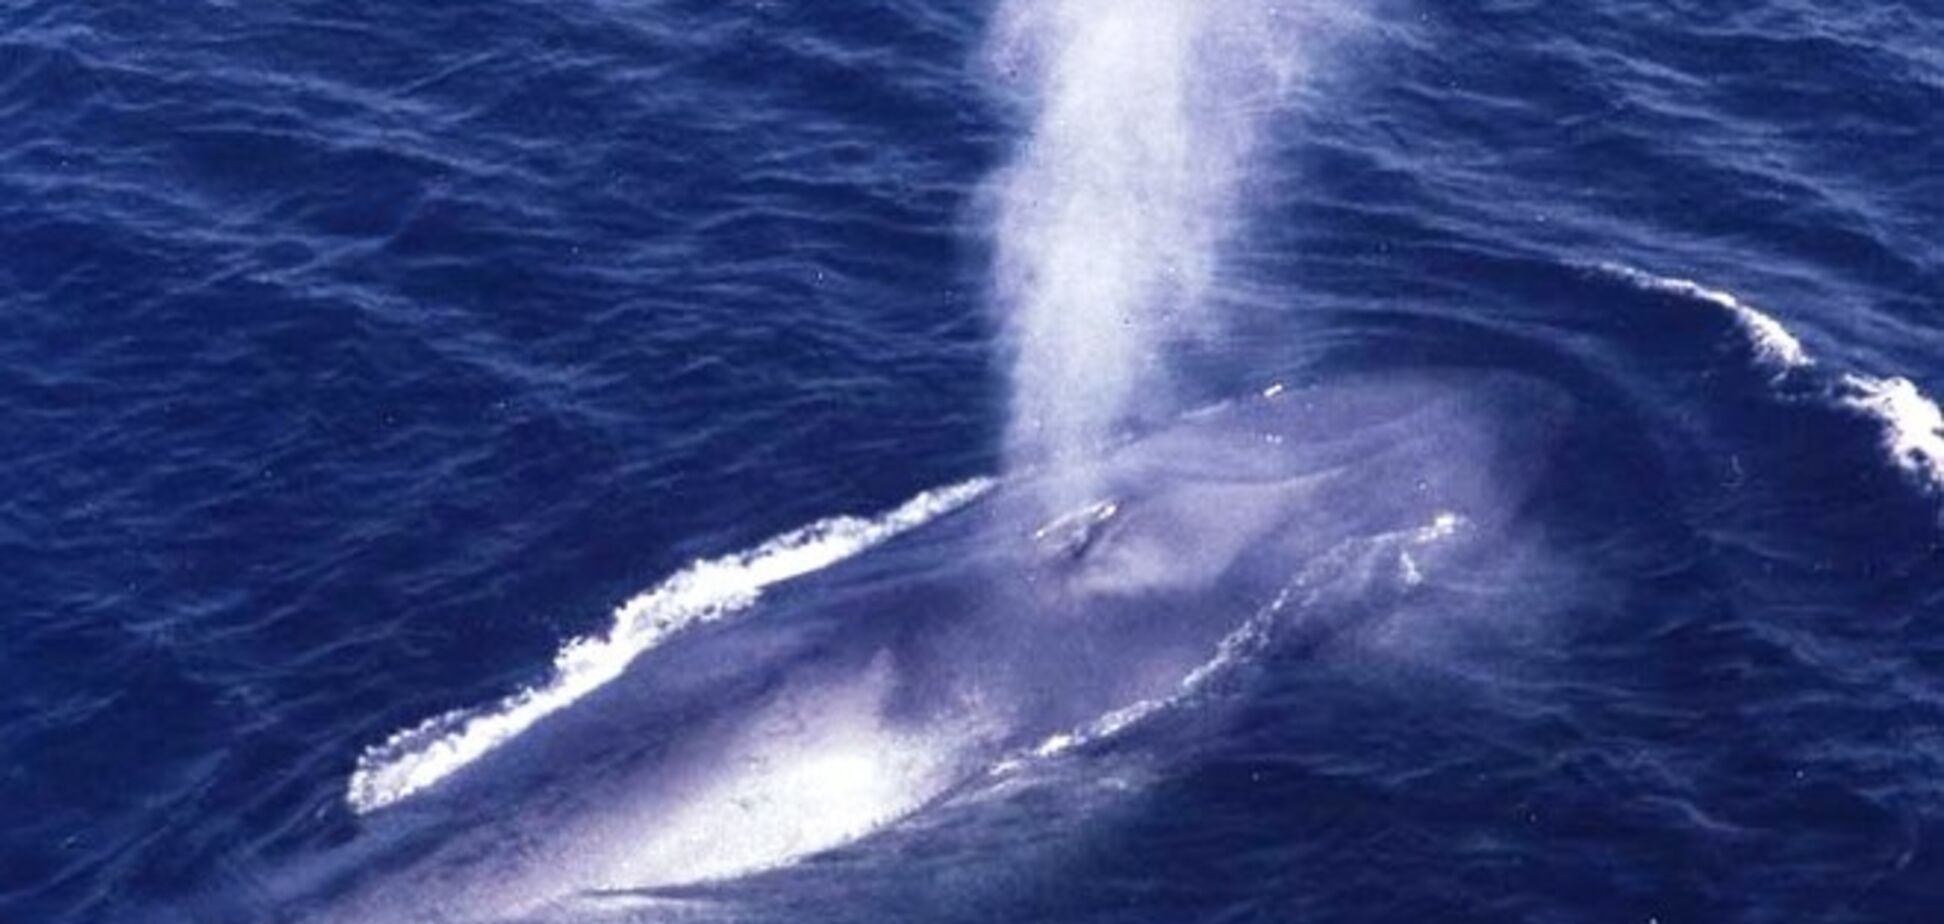 Голубой кит случайно перевернул лодку с людьми